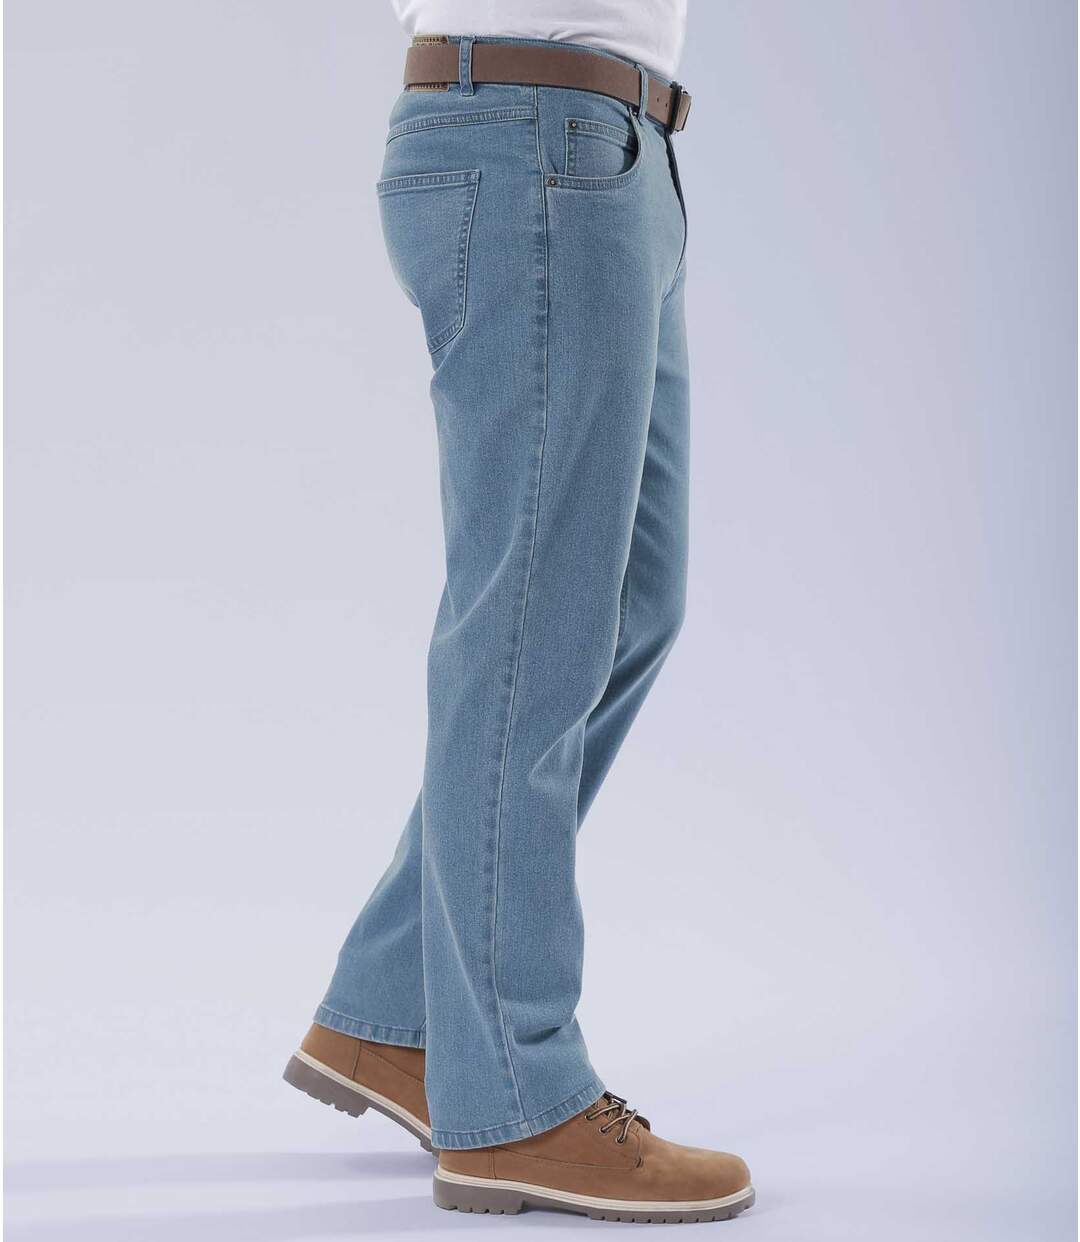 Men's Light Blue Regular Stretch Jeans Atlas For Men